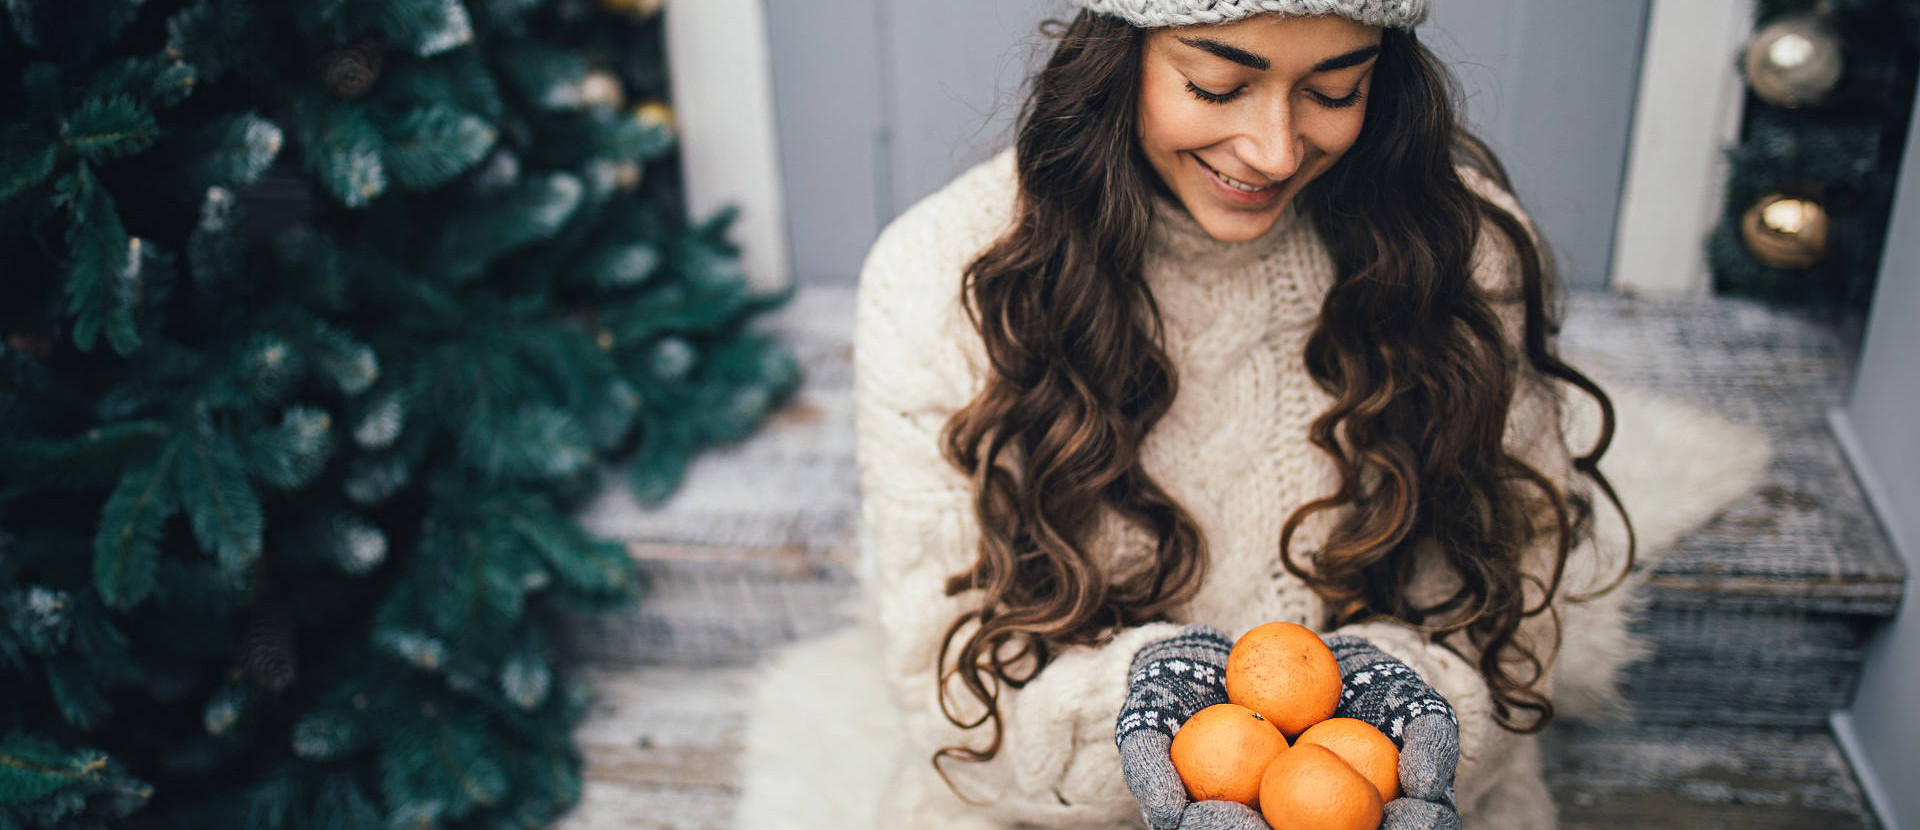 Eine junge Frau sitzt neben einem Weihnachtsbaum und hält vier Mandarinen in ihrer Hand, während sie diese anschaut